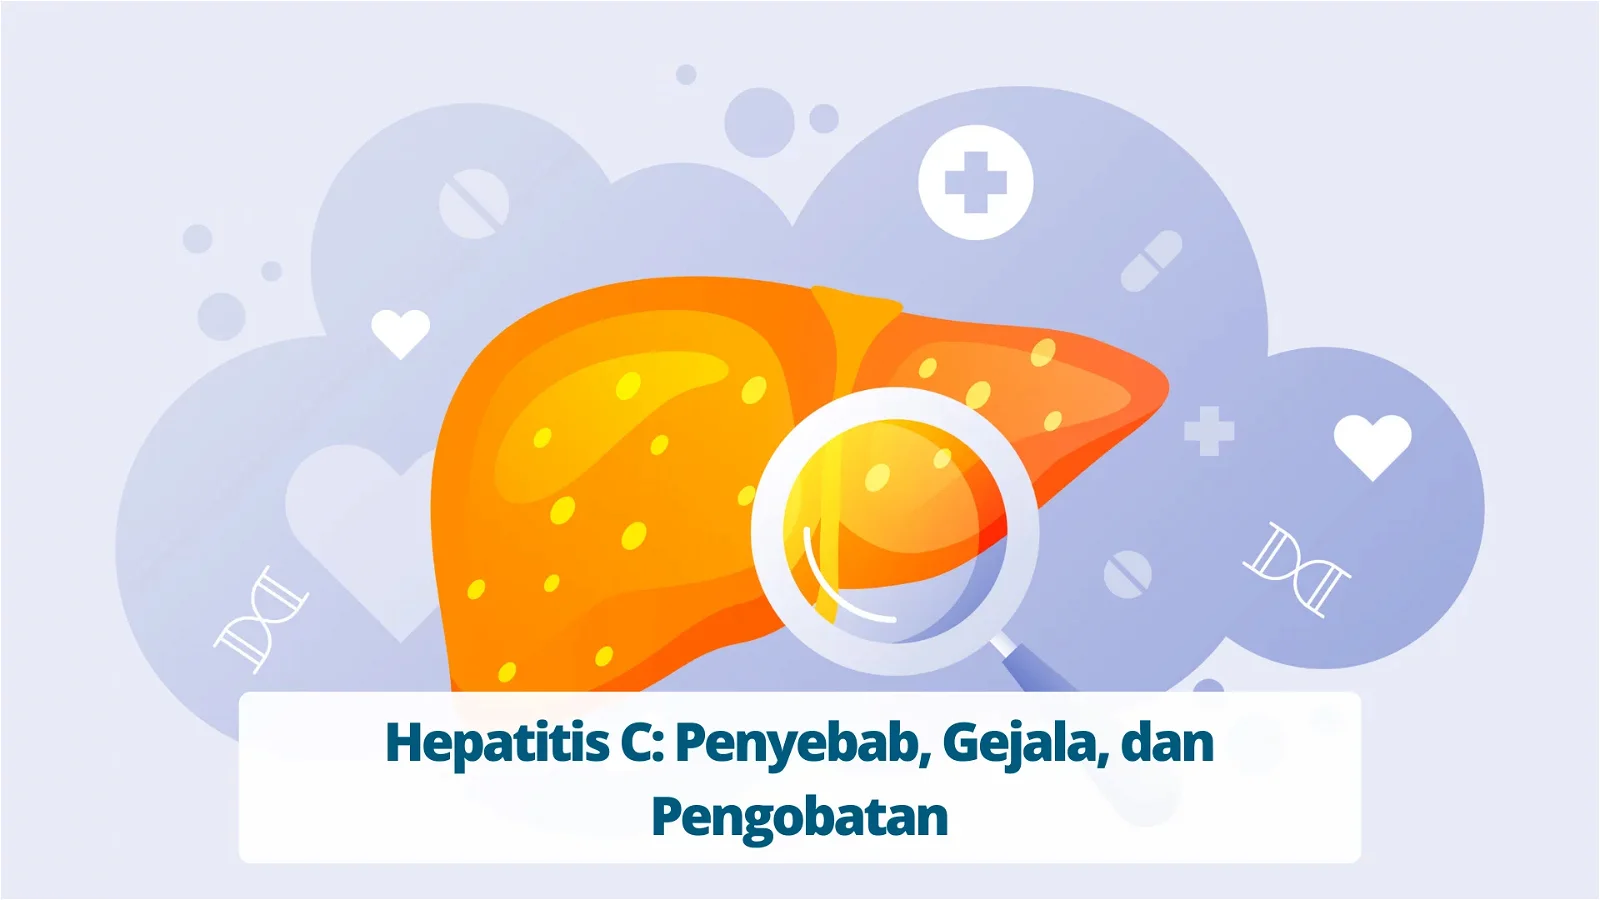 Hepatitis C Penyebab, Gejala, dan Pengobatan